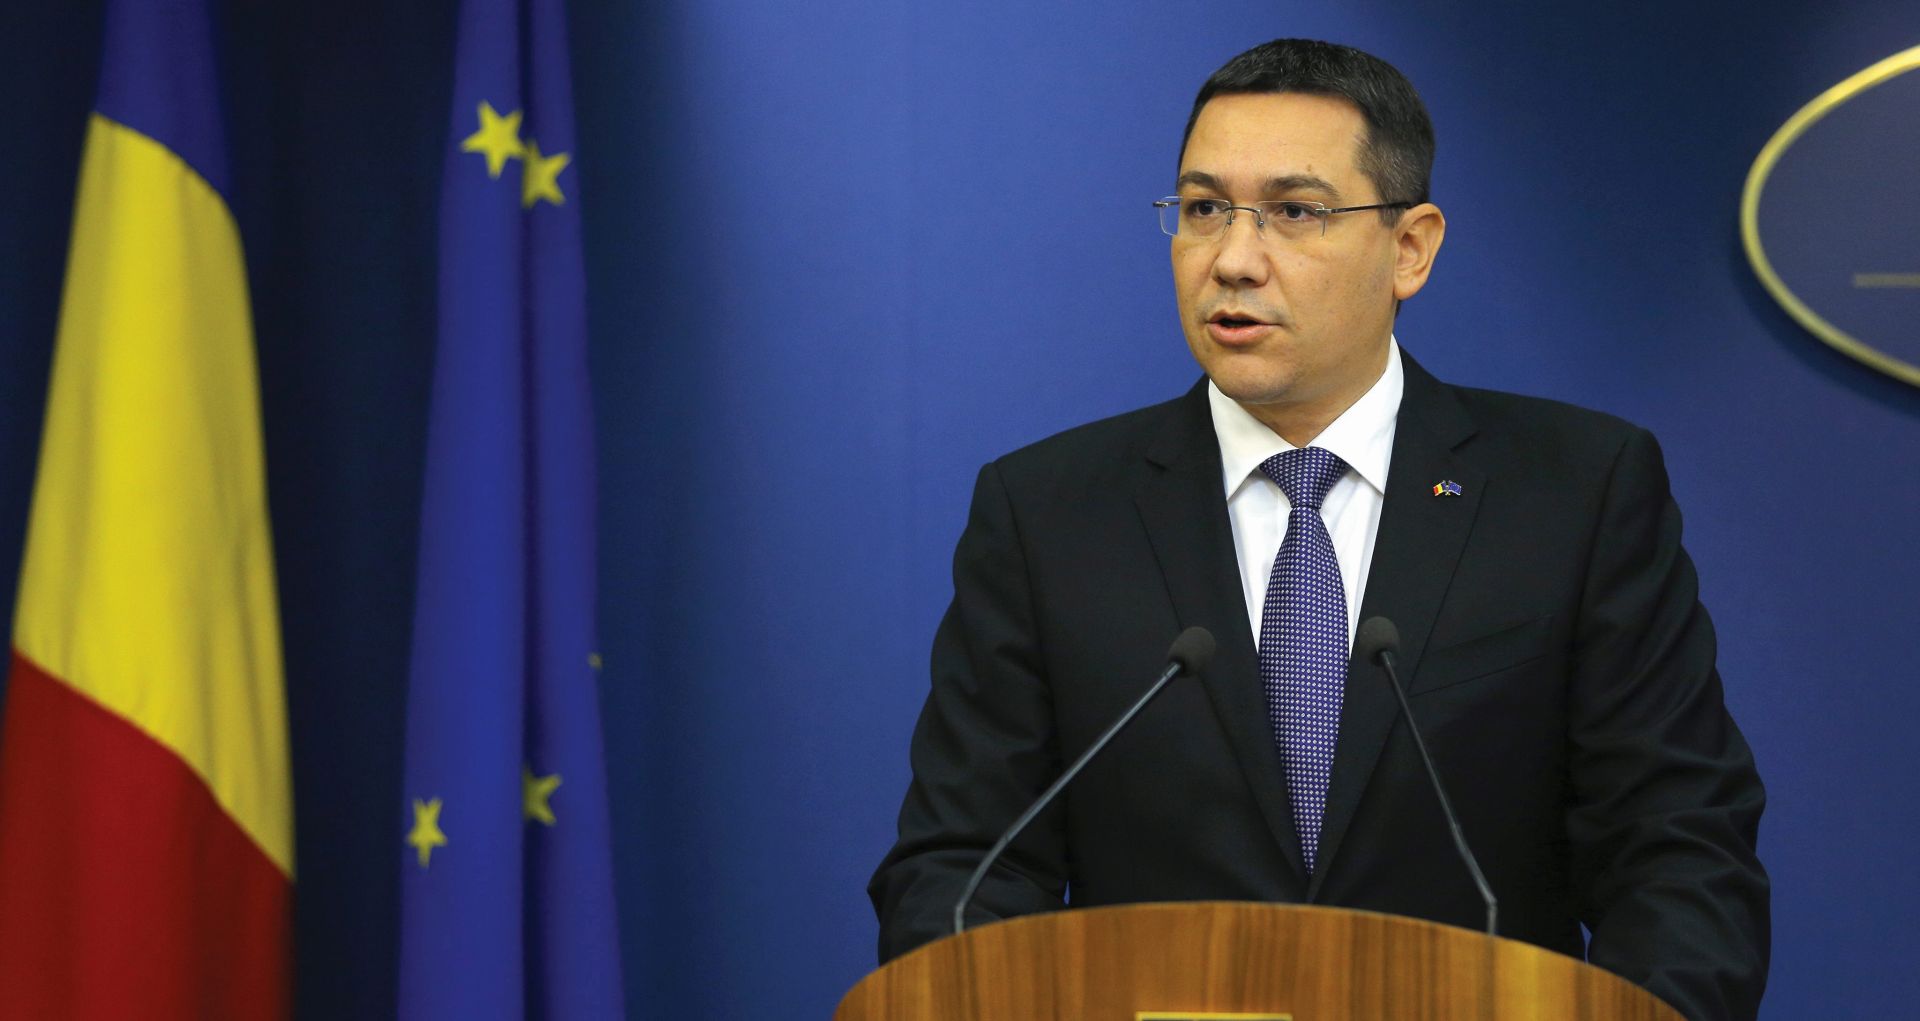 ZBOG POŽARA U NOĆNOM KLUBU Rumunjski premijer Victor Ponta podnio ostavku